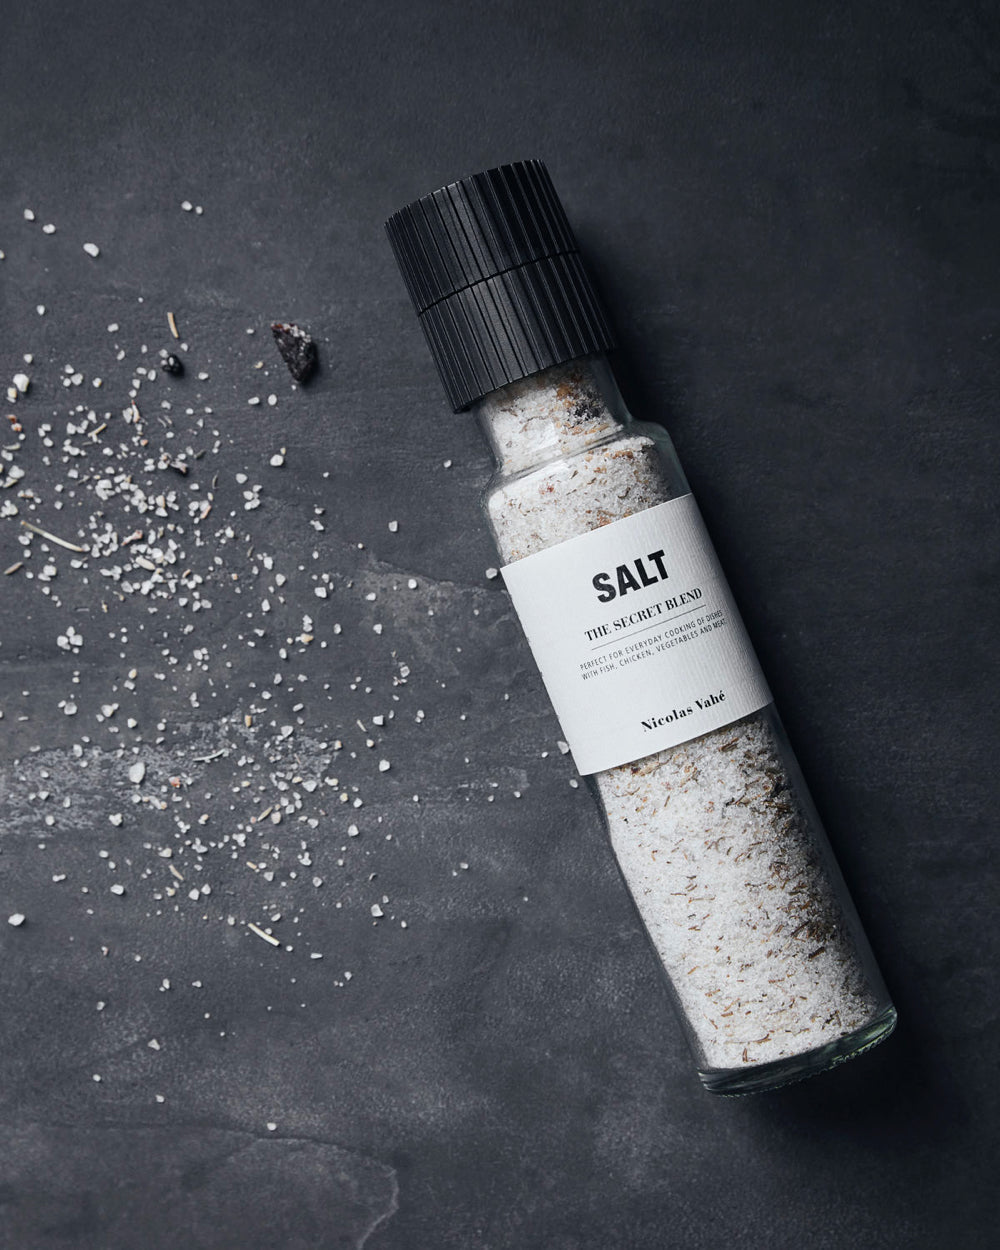 Load billede i Galleri Viewer, Salt, the secret blend
